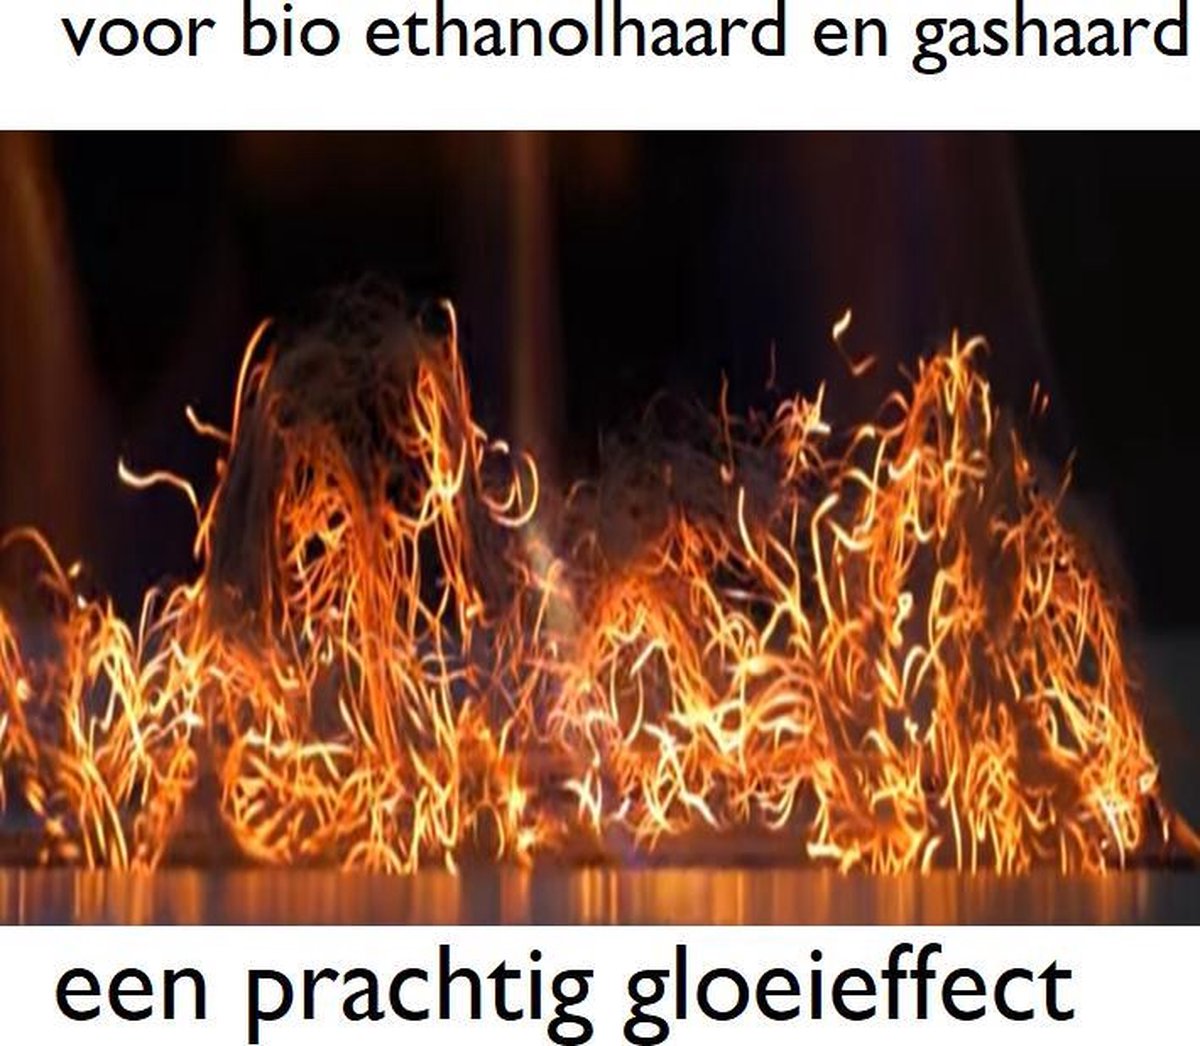 prachtig gloei effect voor uw bio ethanolhaard of gashaard | GLOW FLAME EFFECT - GLOEI EFFECT| grote verpakking van 5 gram!